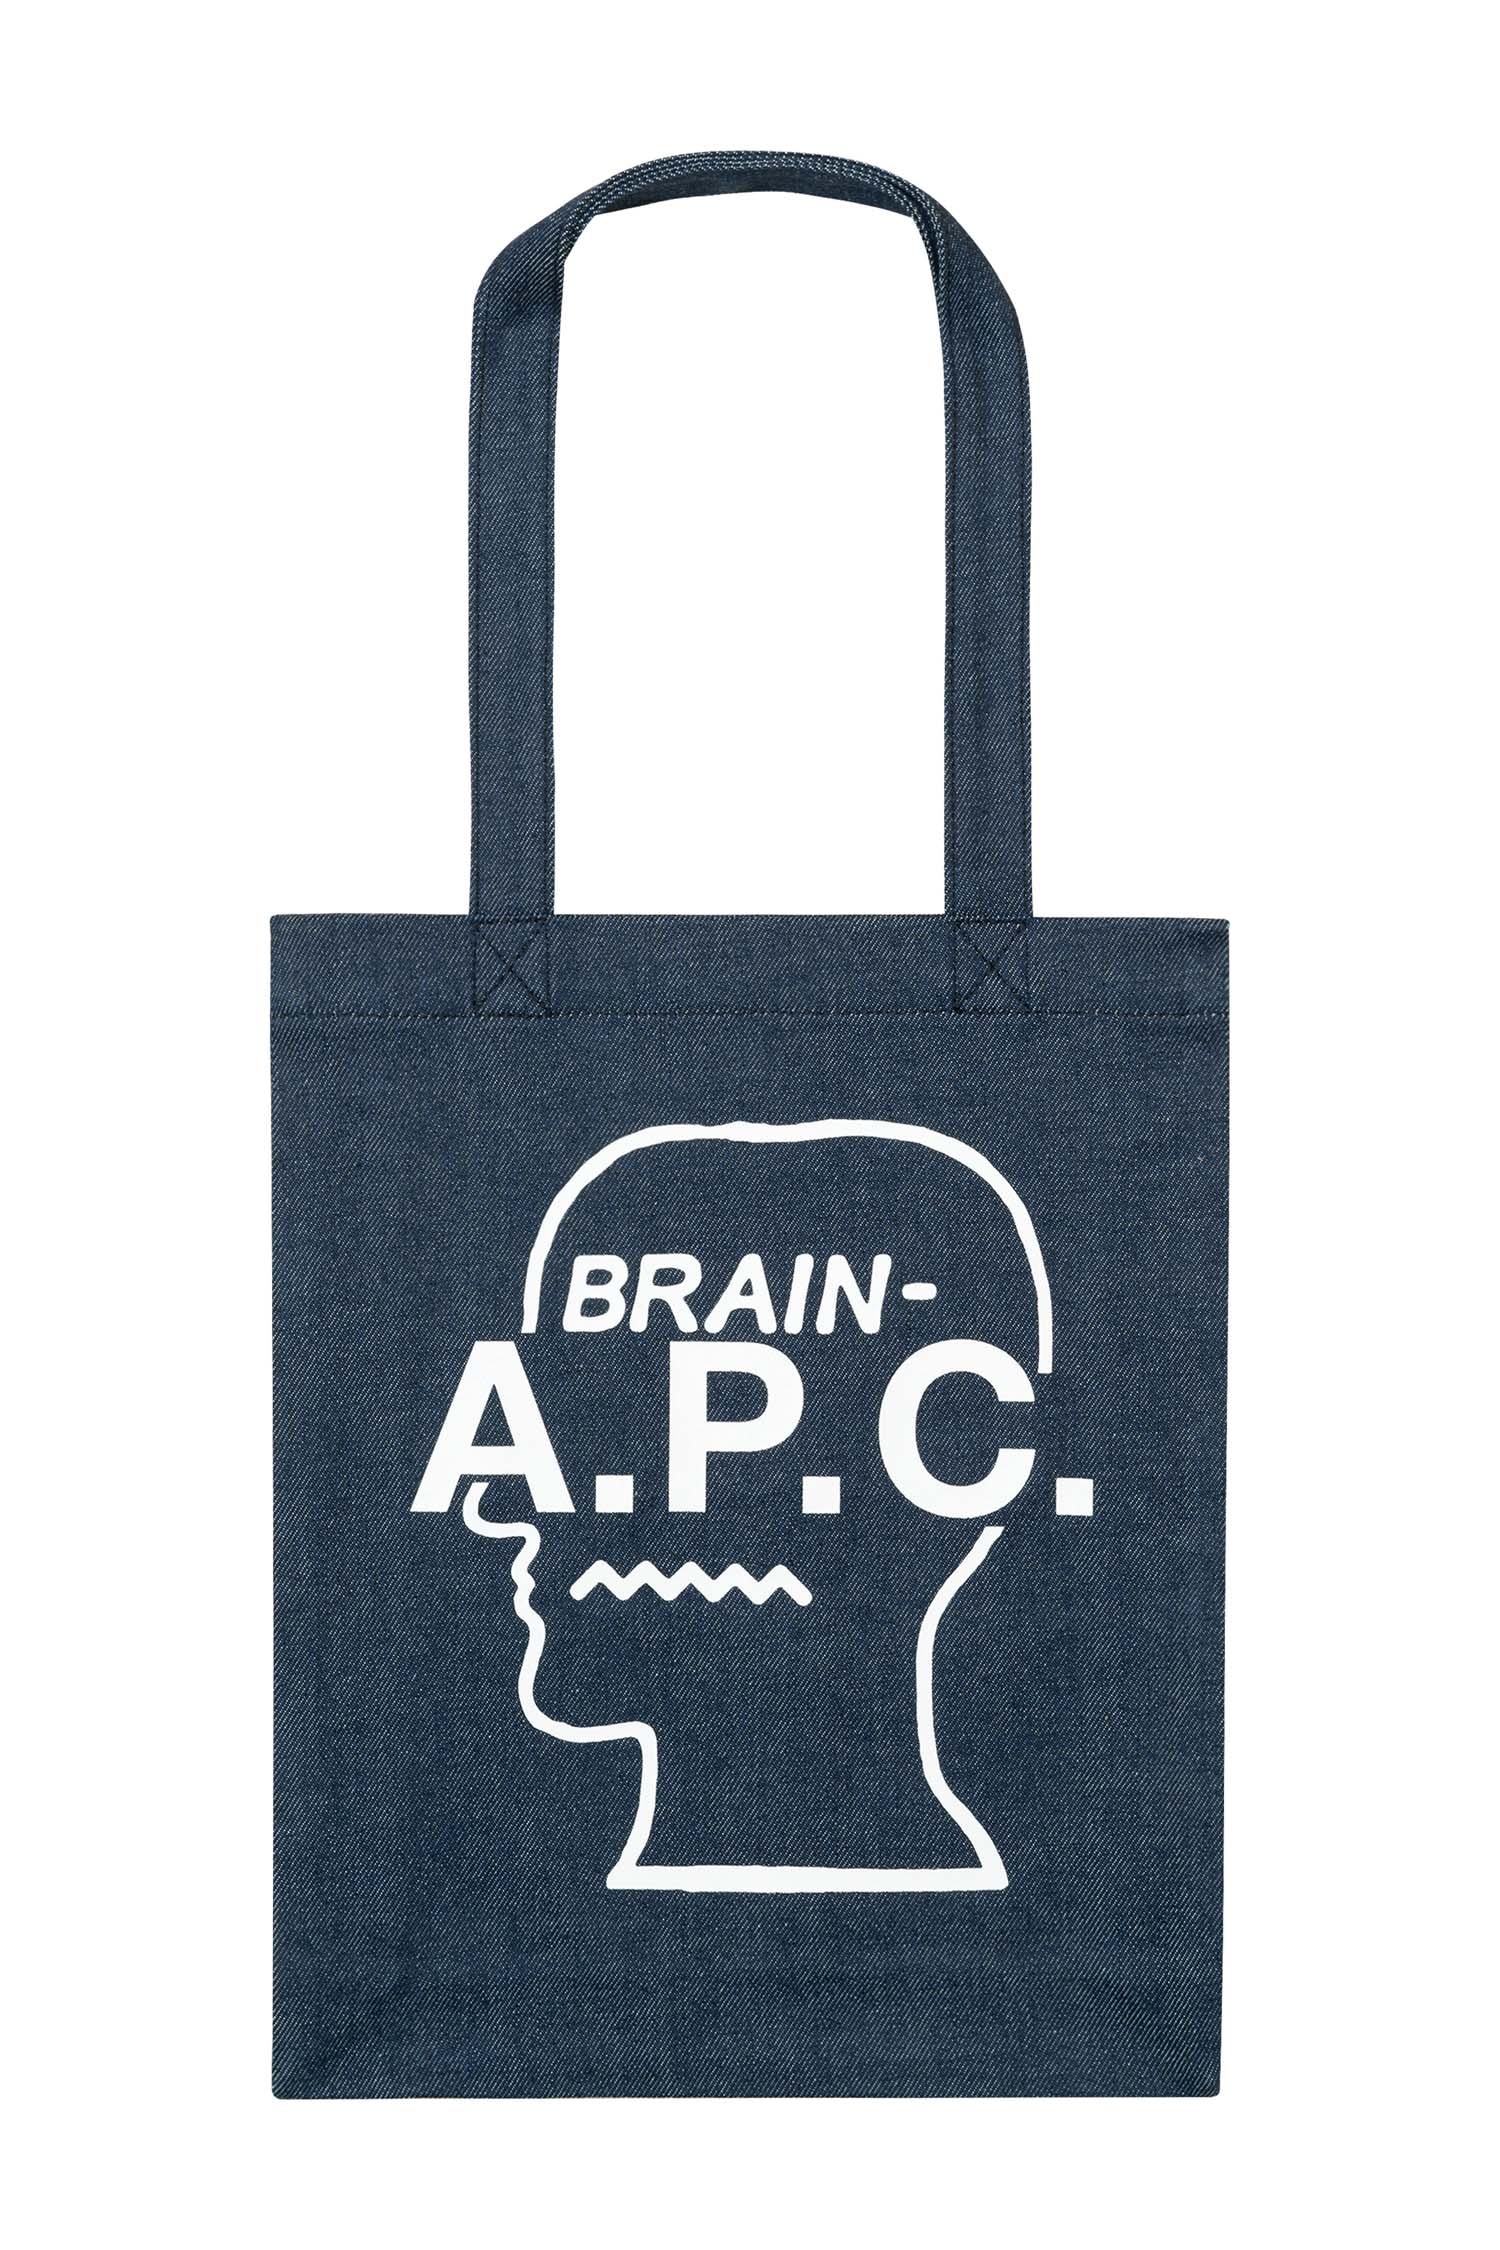 A.P.C. Brain Dead collection